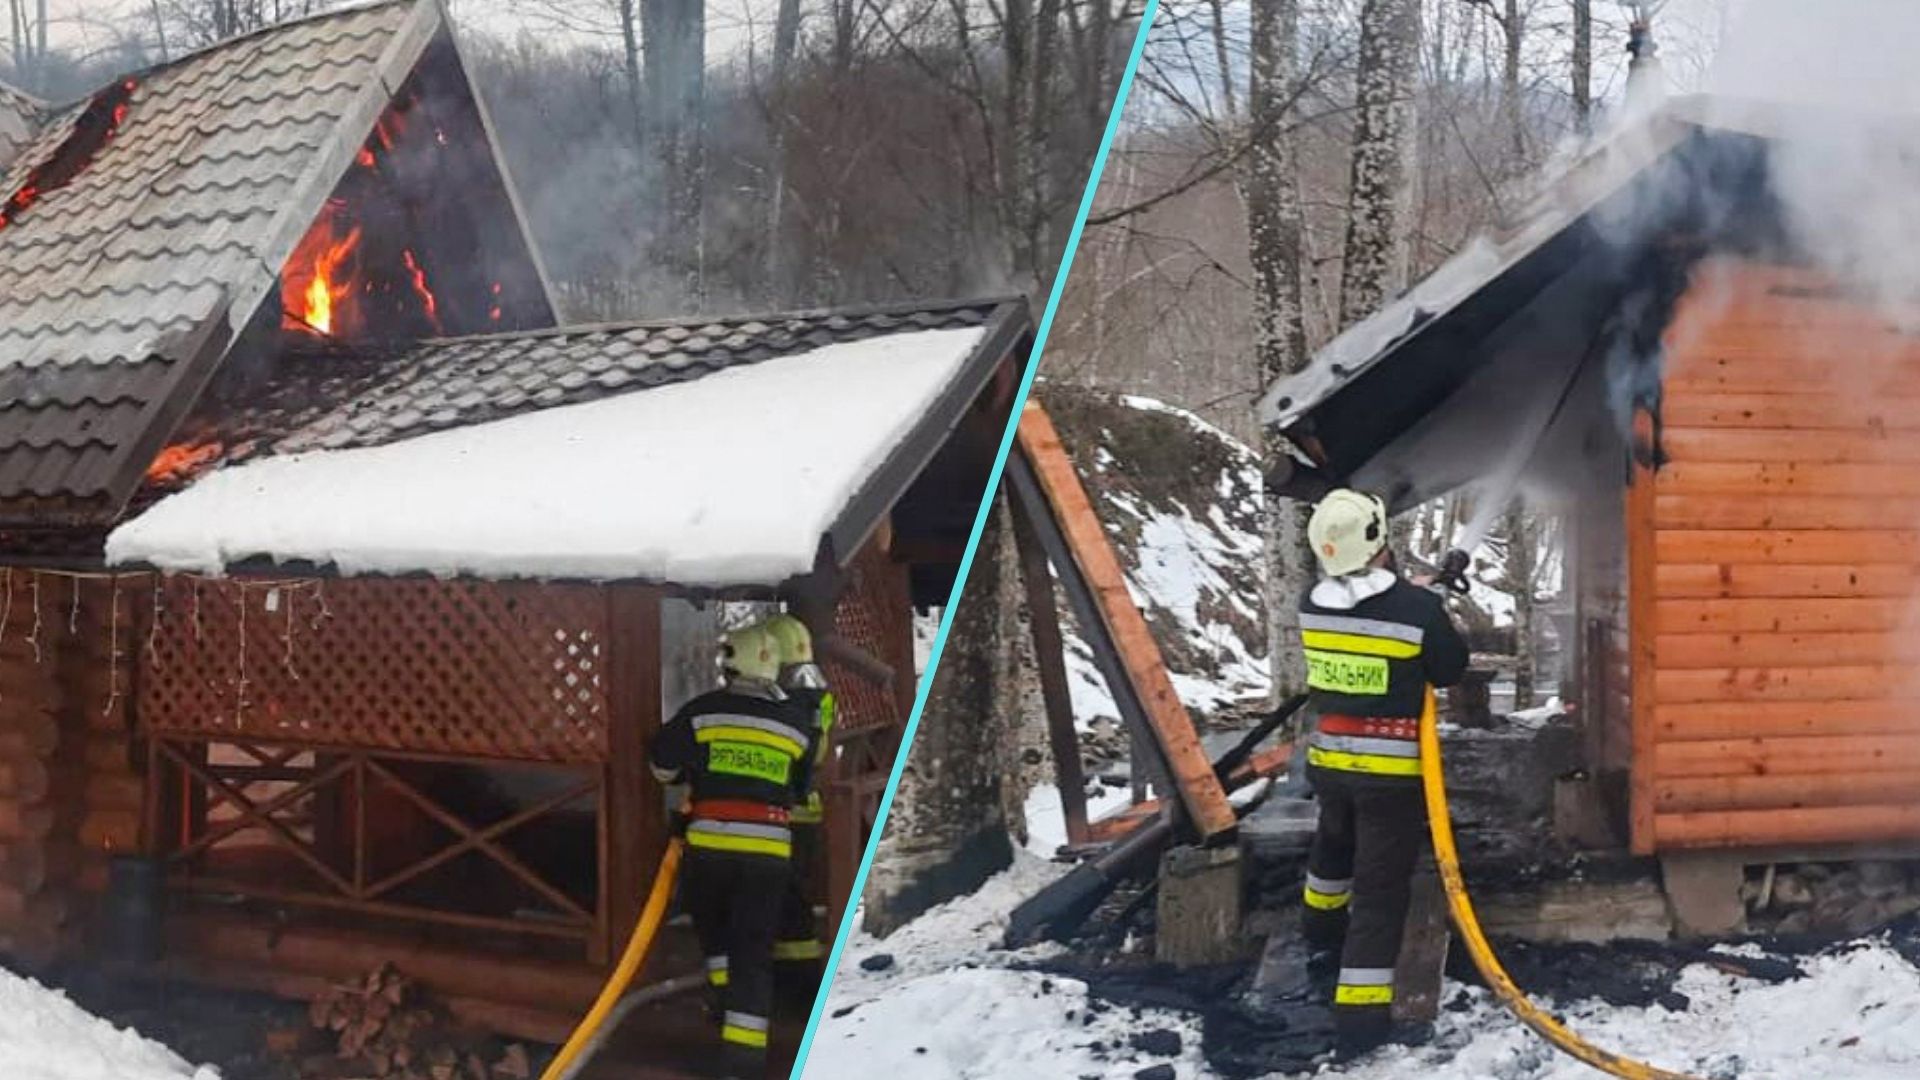 У селі Тур’я Поляна на Ужгородщині вчора сталася пожежа, яка знищила дерев’яну лазню. Господарі, які розклали вогонь для прогріву лазні, відійшли, не переконавшись у безпеці ситуації.